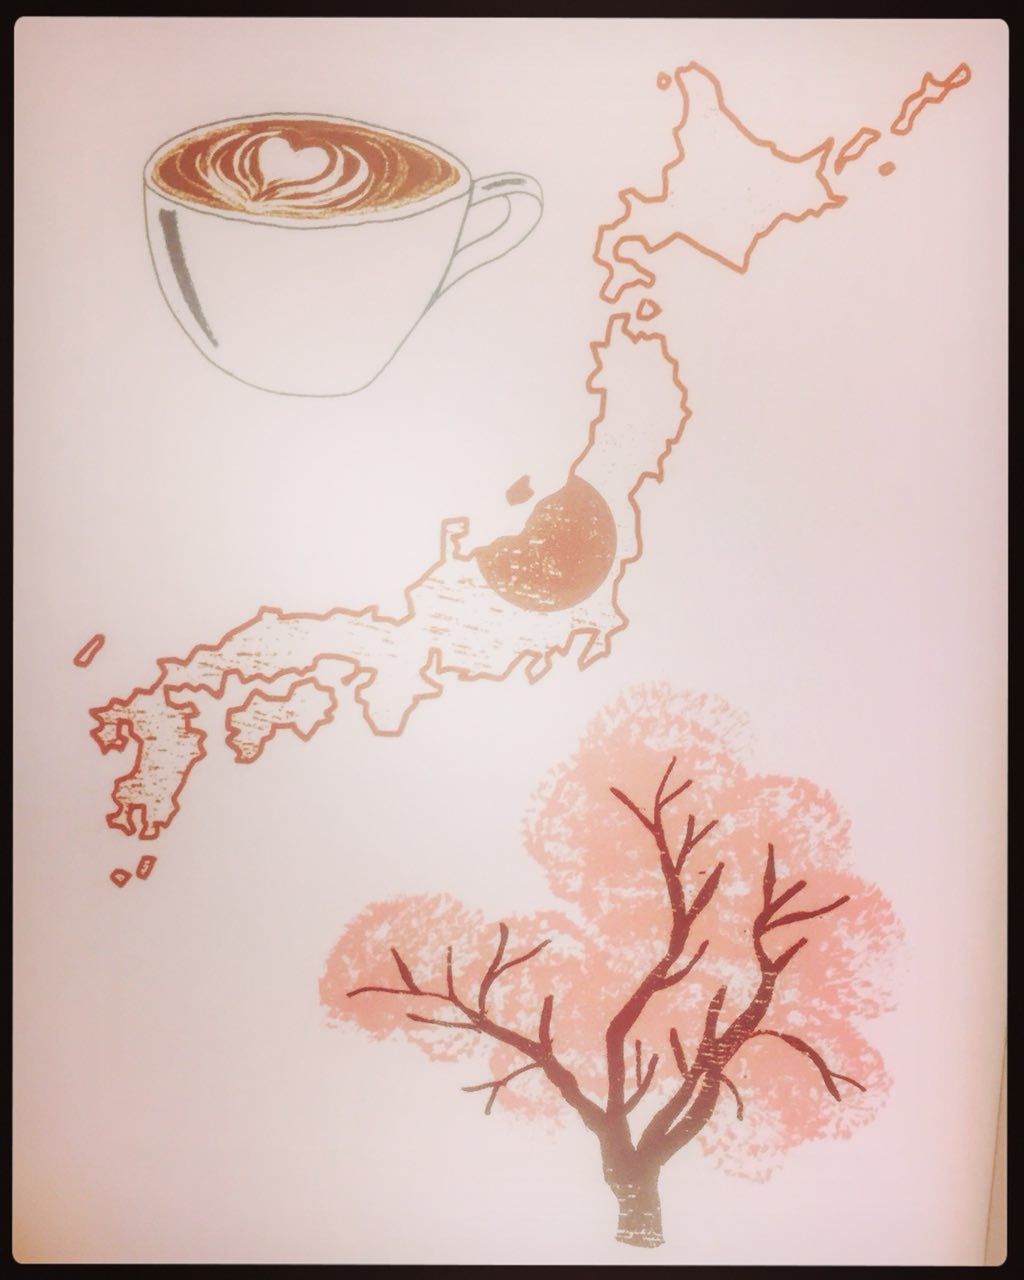 نگاهی به جایگاه قهوه در ژاپن